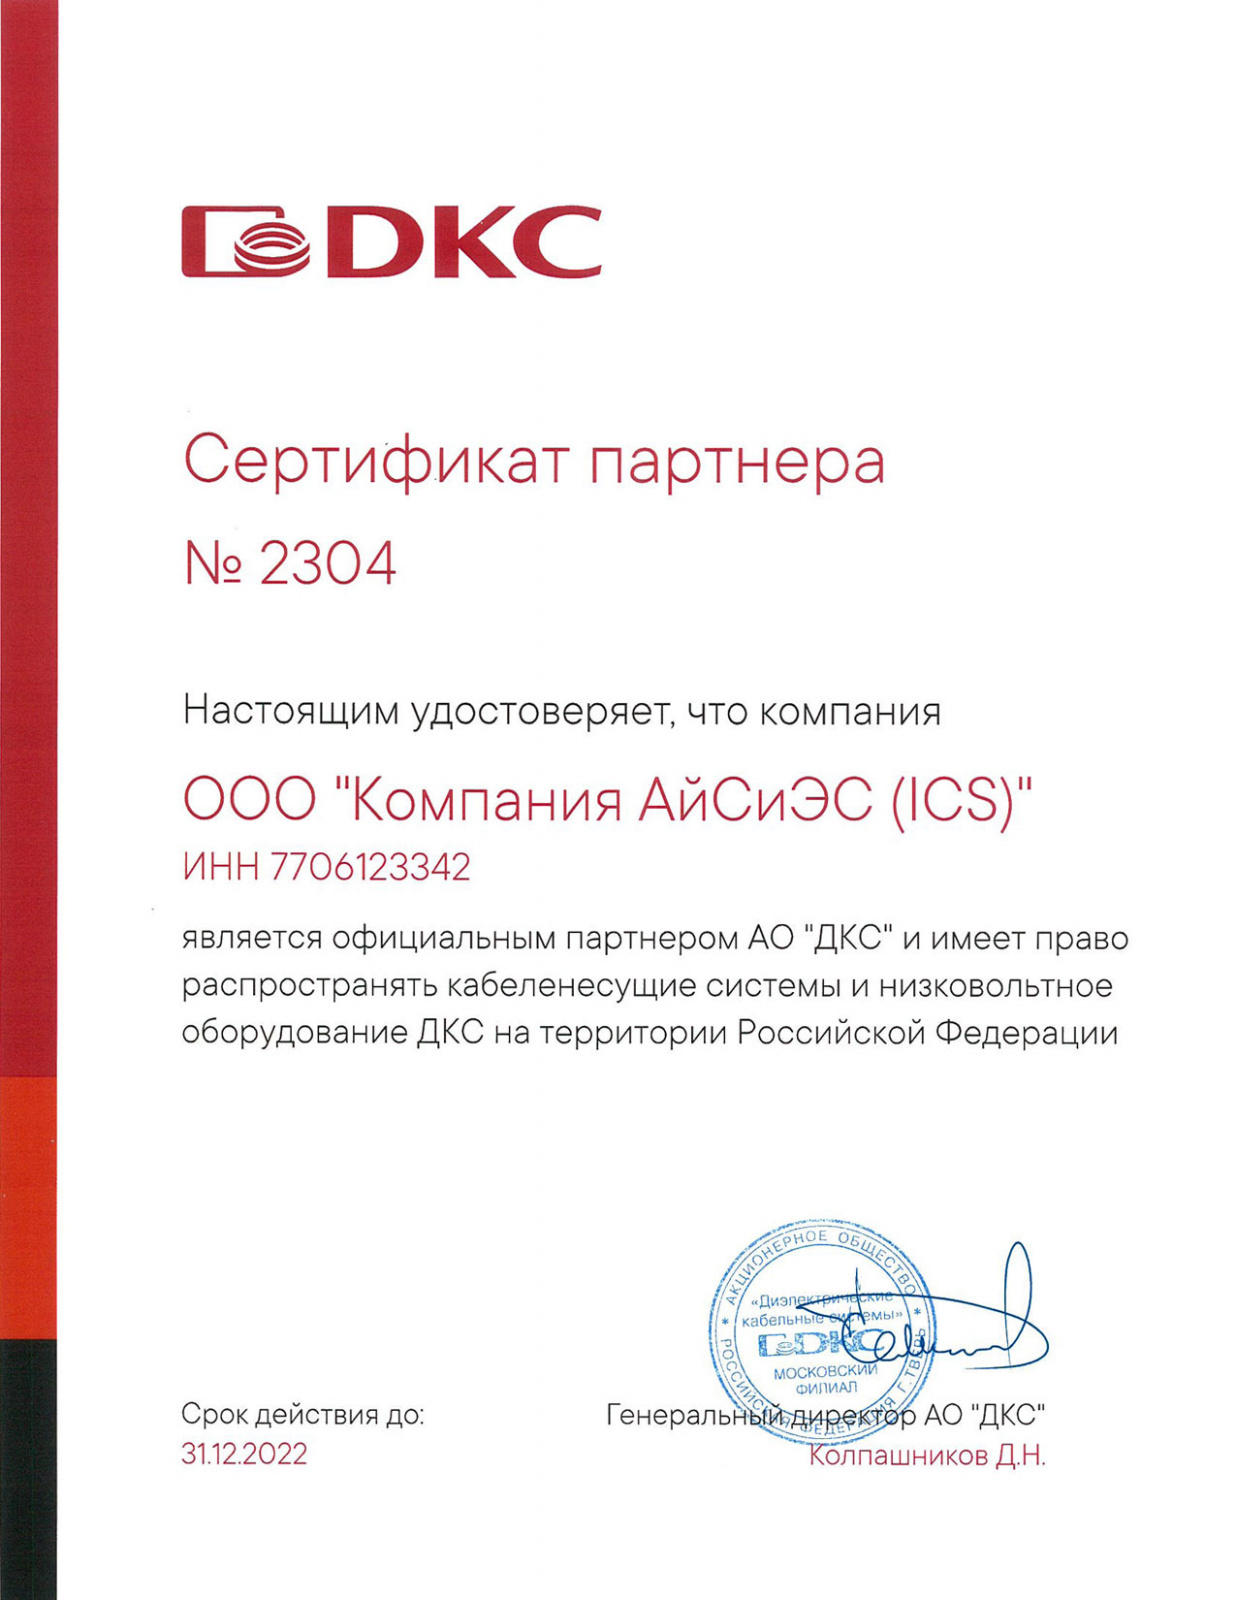 dkc_certificat_2022.jpg